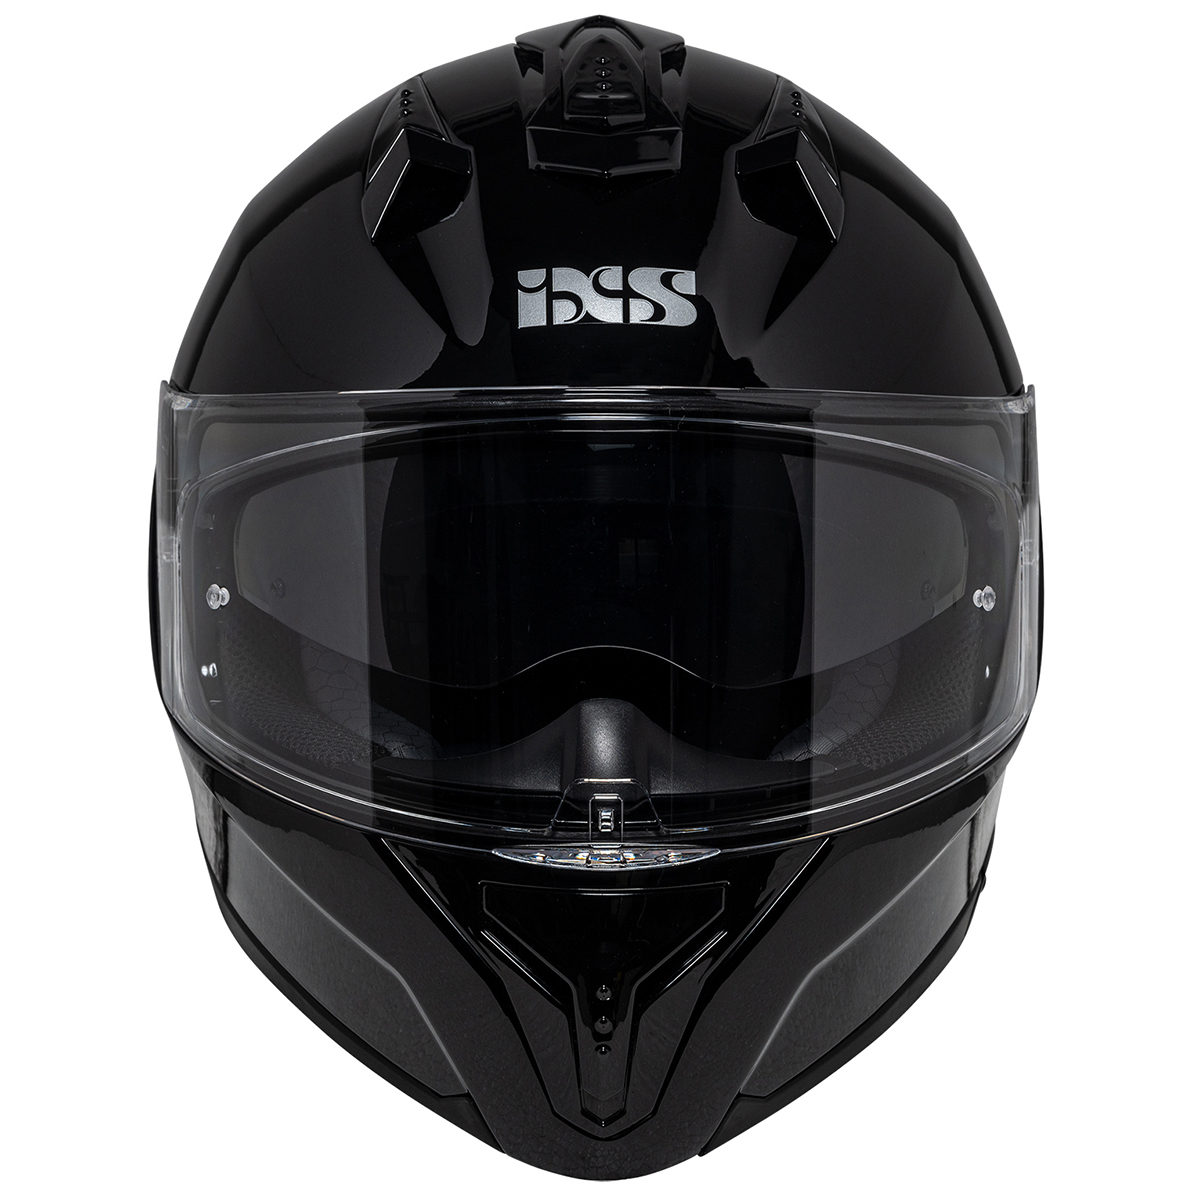 iXS Helm iXS217 1.0, schwarz